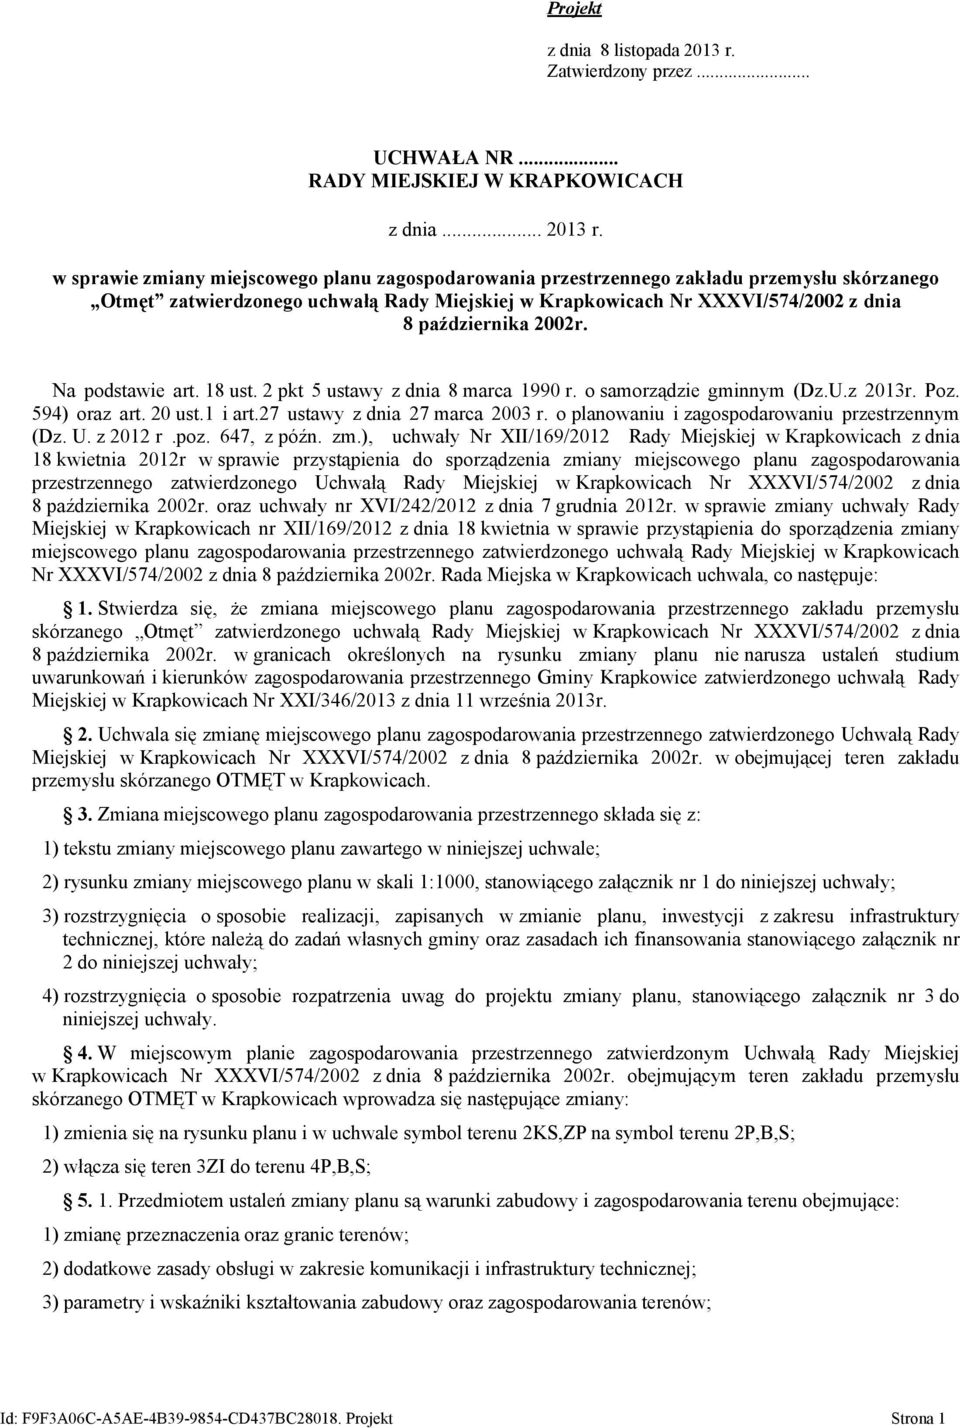 w sprawie zmiany miejscowego planu zagospodarowania przestrzennego zakładu przemysłu skórzanego Otmęt zatwierdzonego uchwałą Rady Miejskiej w Krapkowicach Nr XXXVI/574/2002 z dnia 8 października